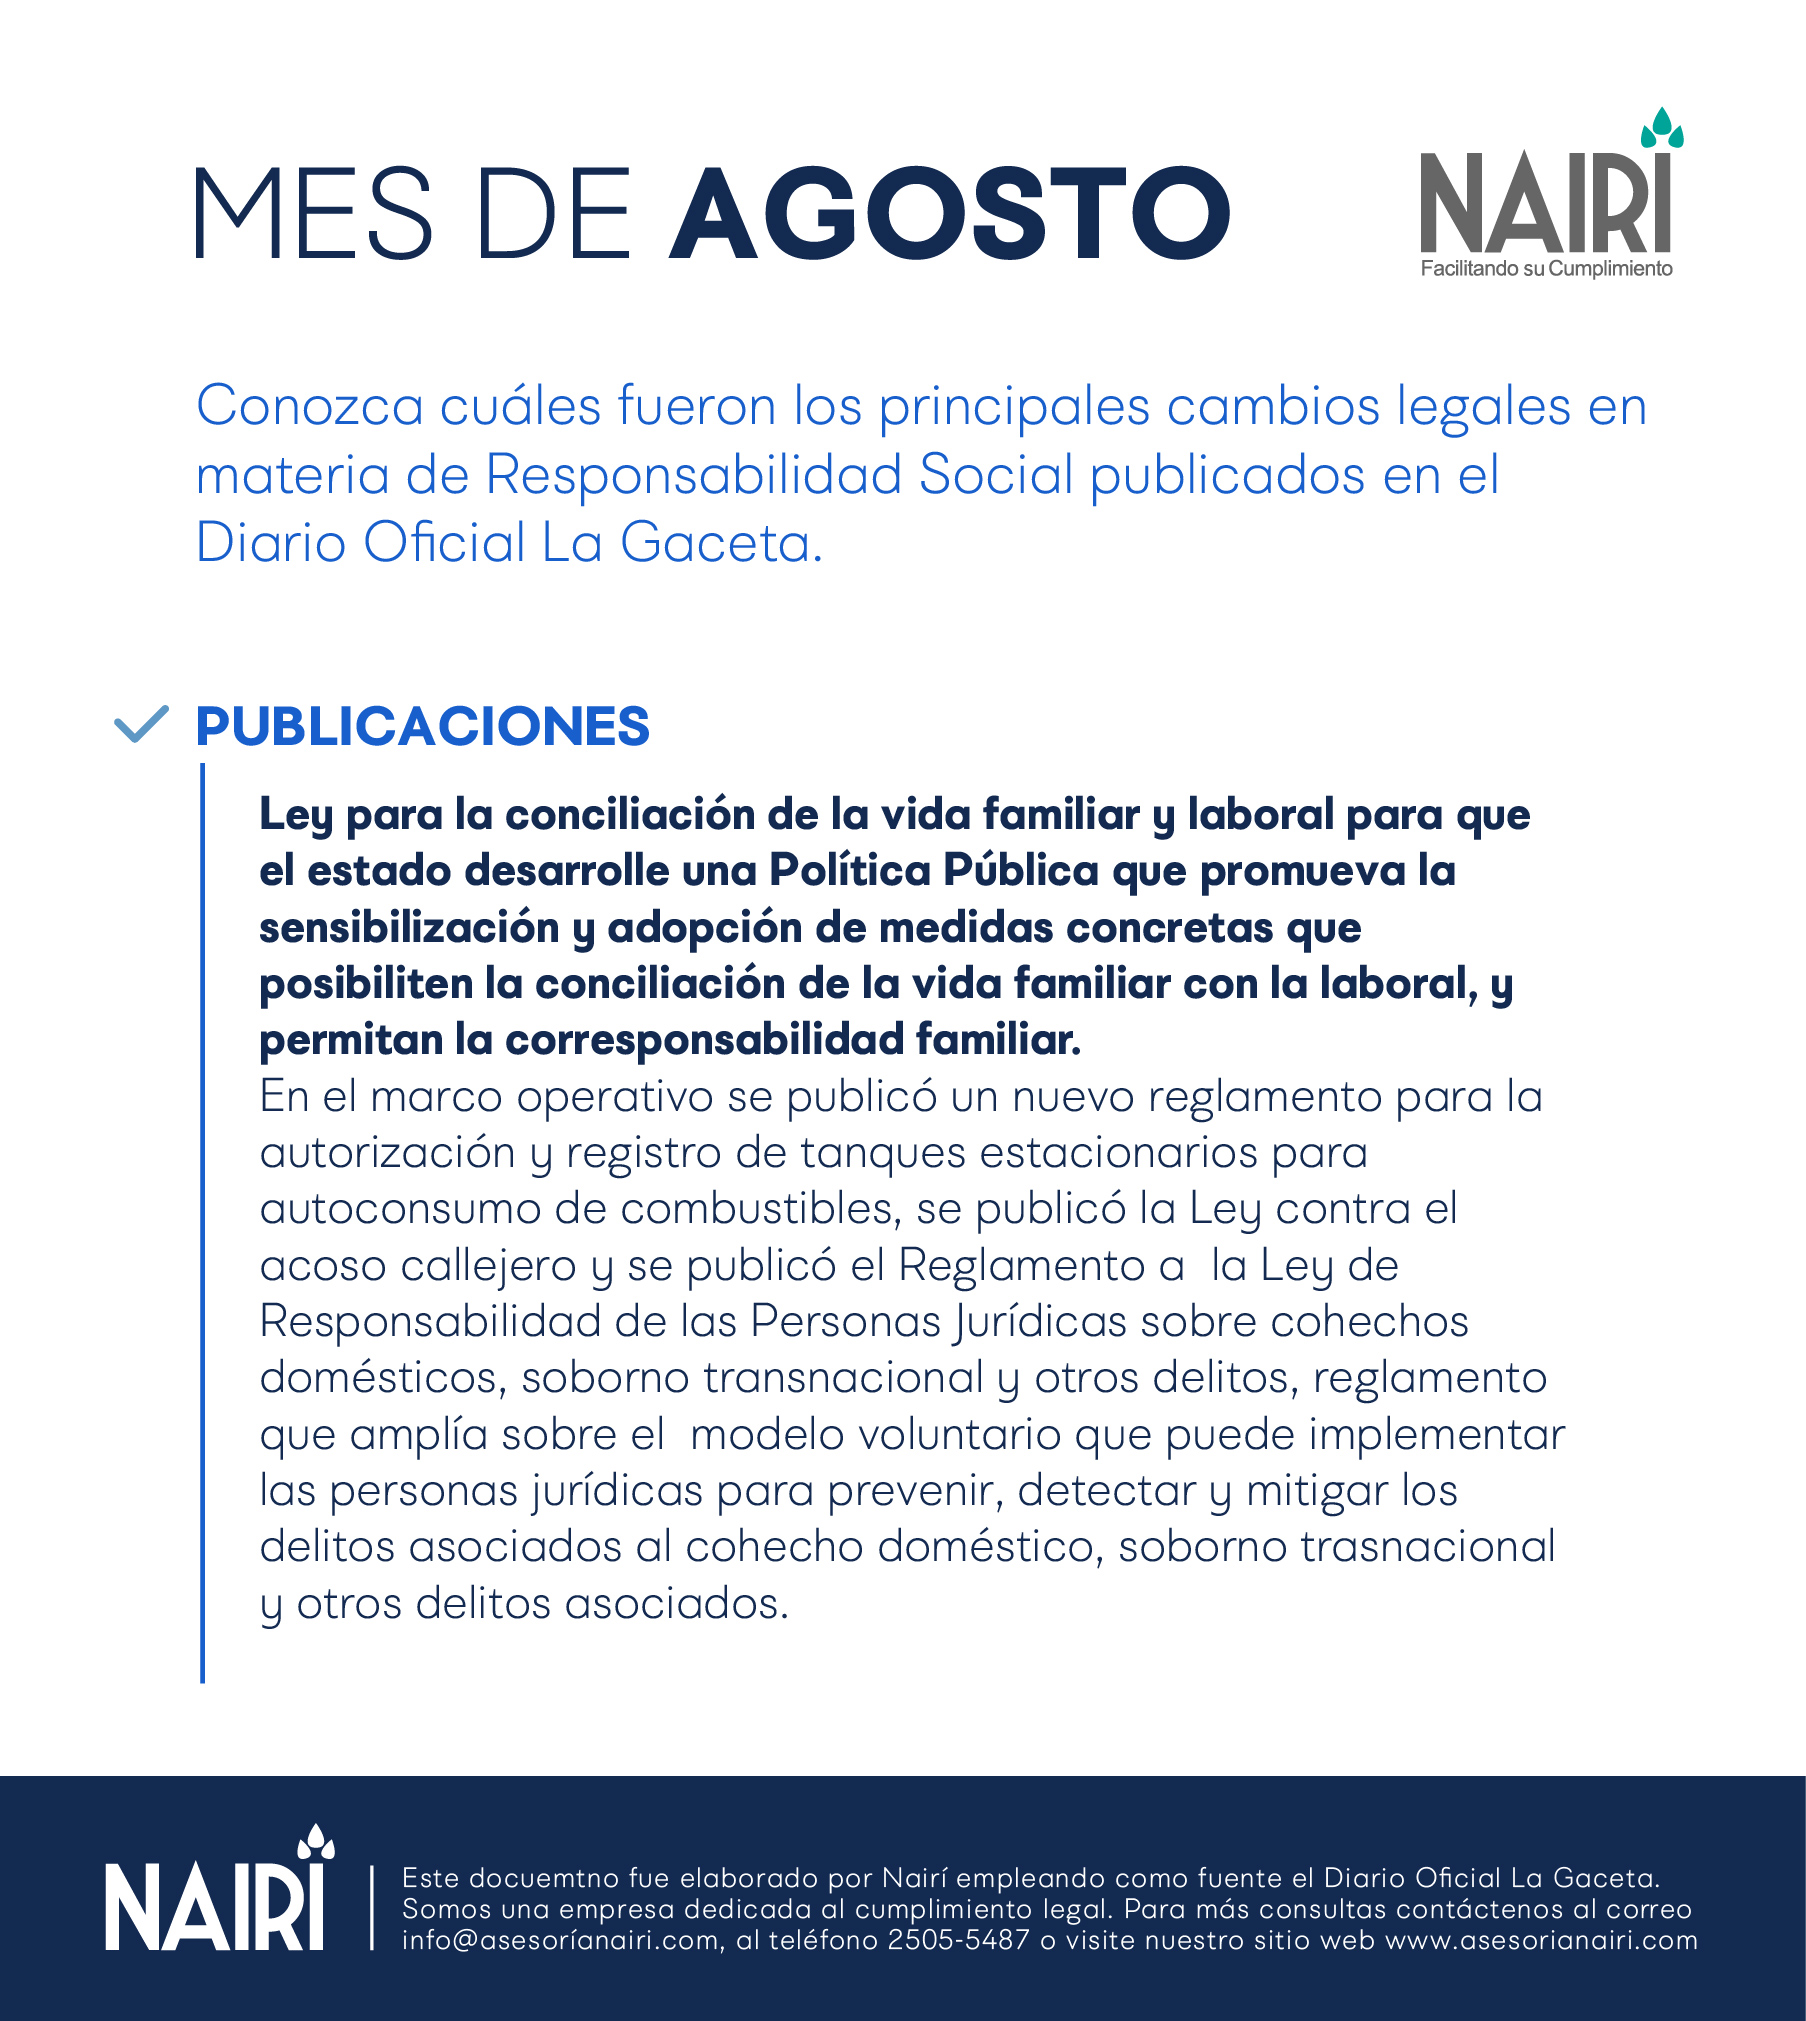 Reporte de Actualización Legal en RS y Sostenibilidad -2020